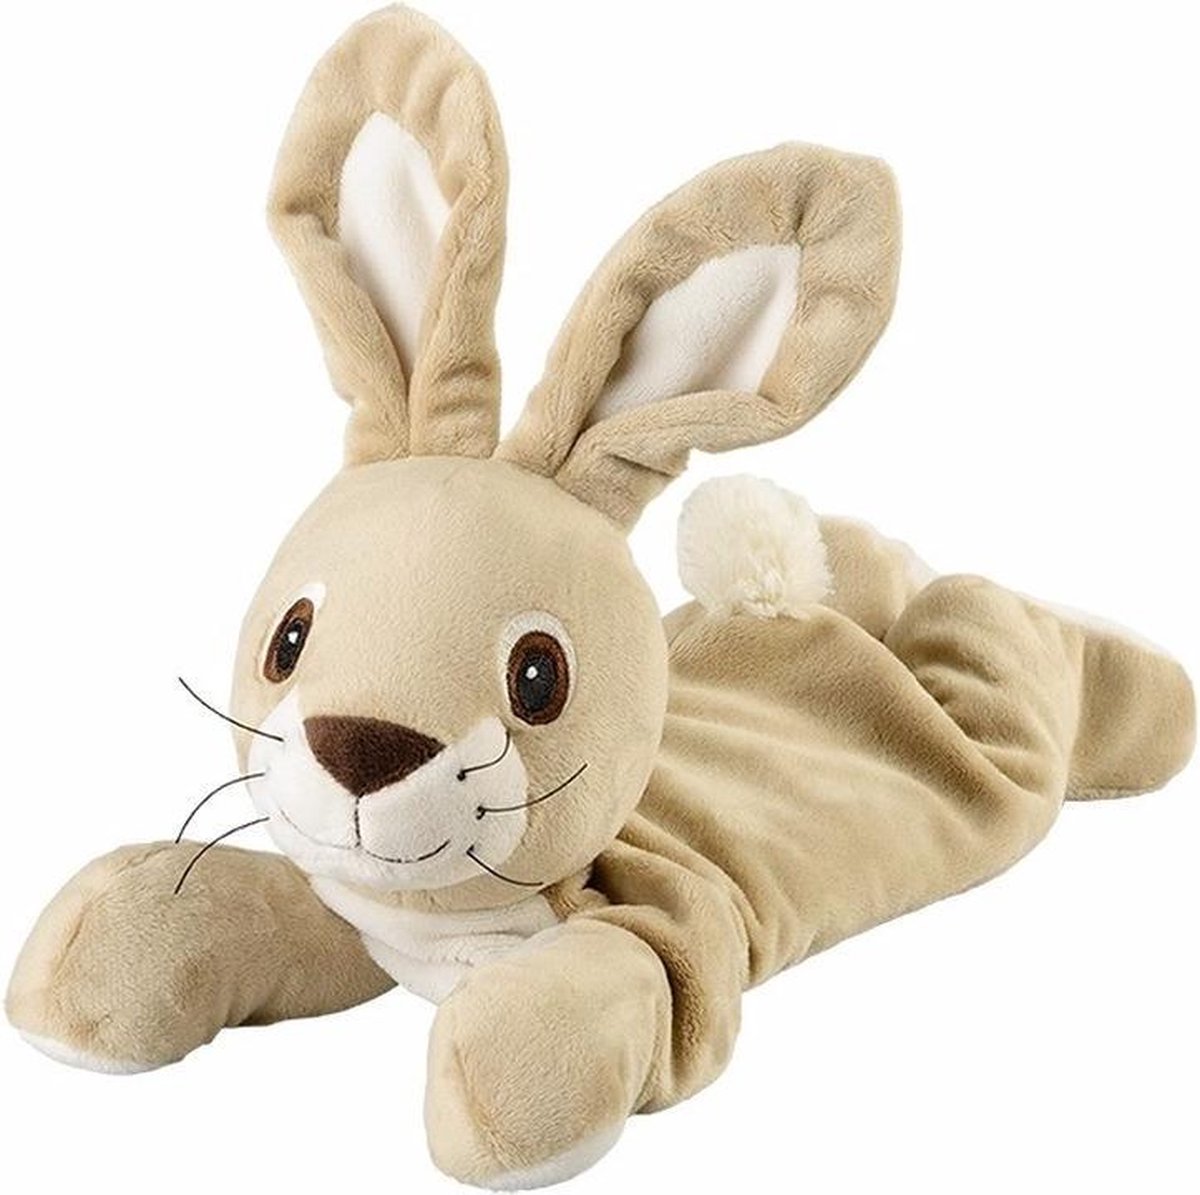 Magnetron warmte knuffel konijn/haas beige 35 cm - Heatpack/coldpack - Warmteknuffel lavendel geur - Bosdieren konijnen/hazen knuffels - Dierenknuffels - Merkloos